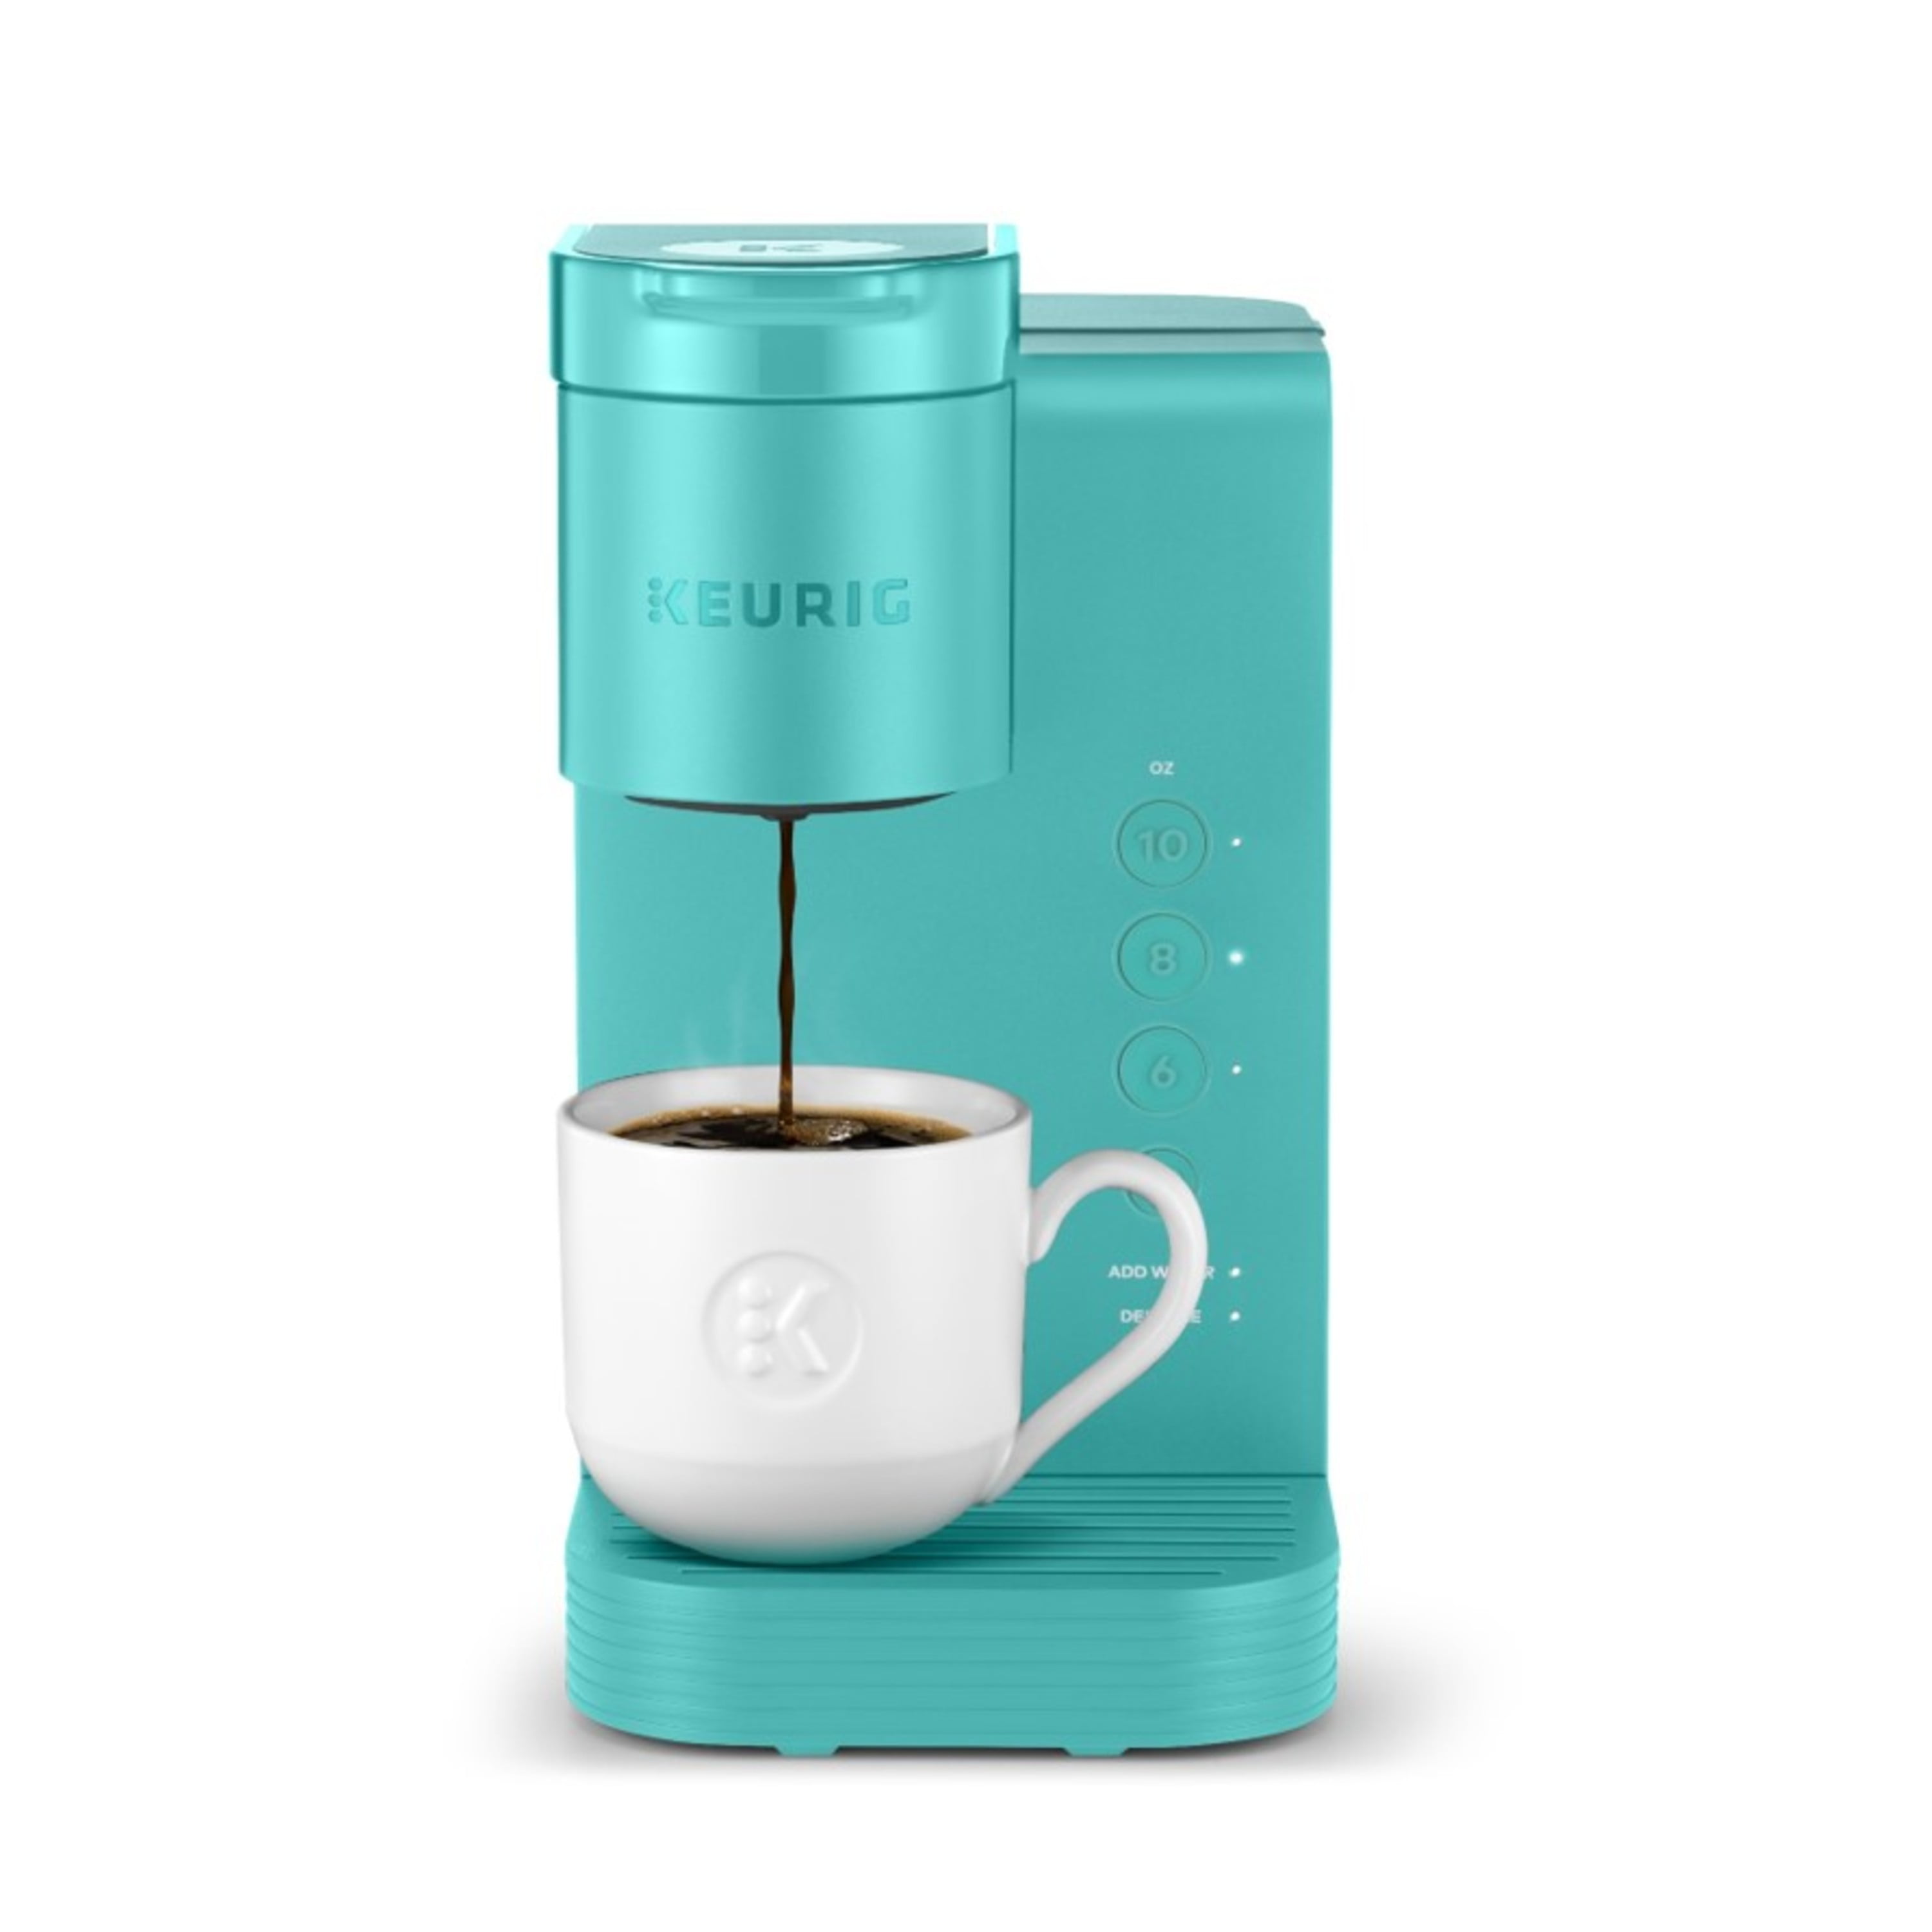 Keurig's K-Mini Coffee Maker Sale 2022 -  Keurig Sale